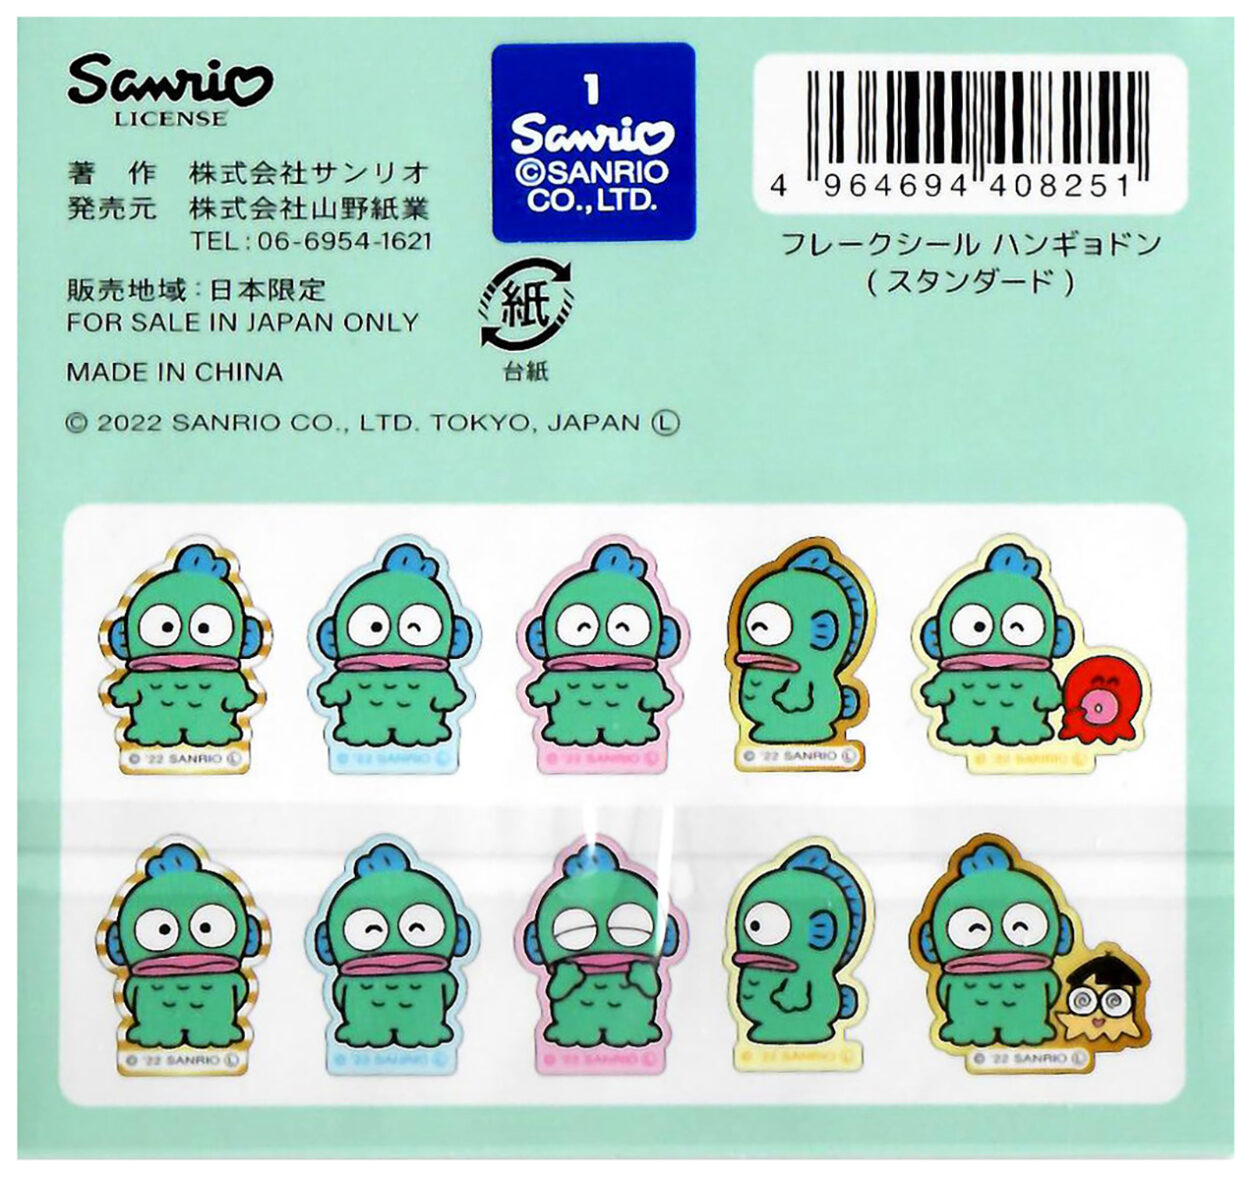 Sanrio-Hangyodon sticker sack2